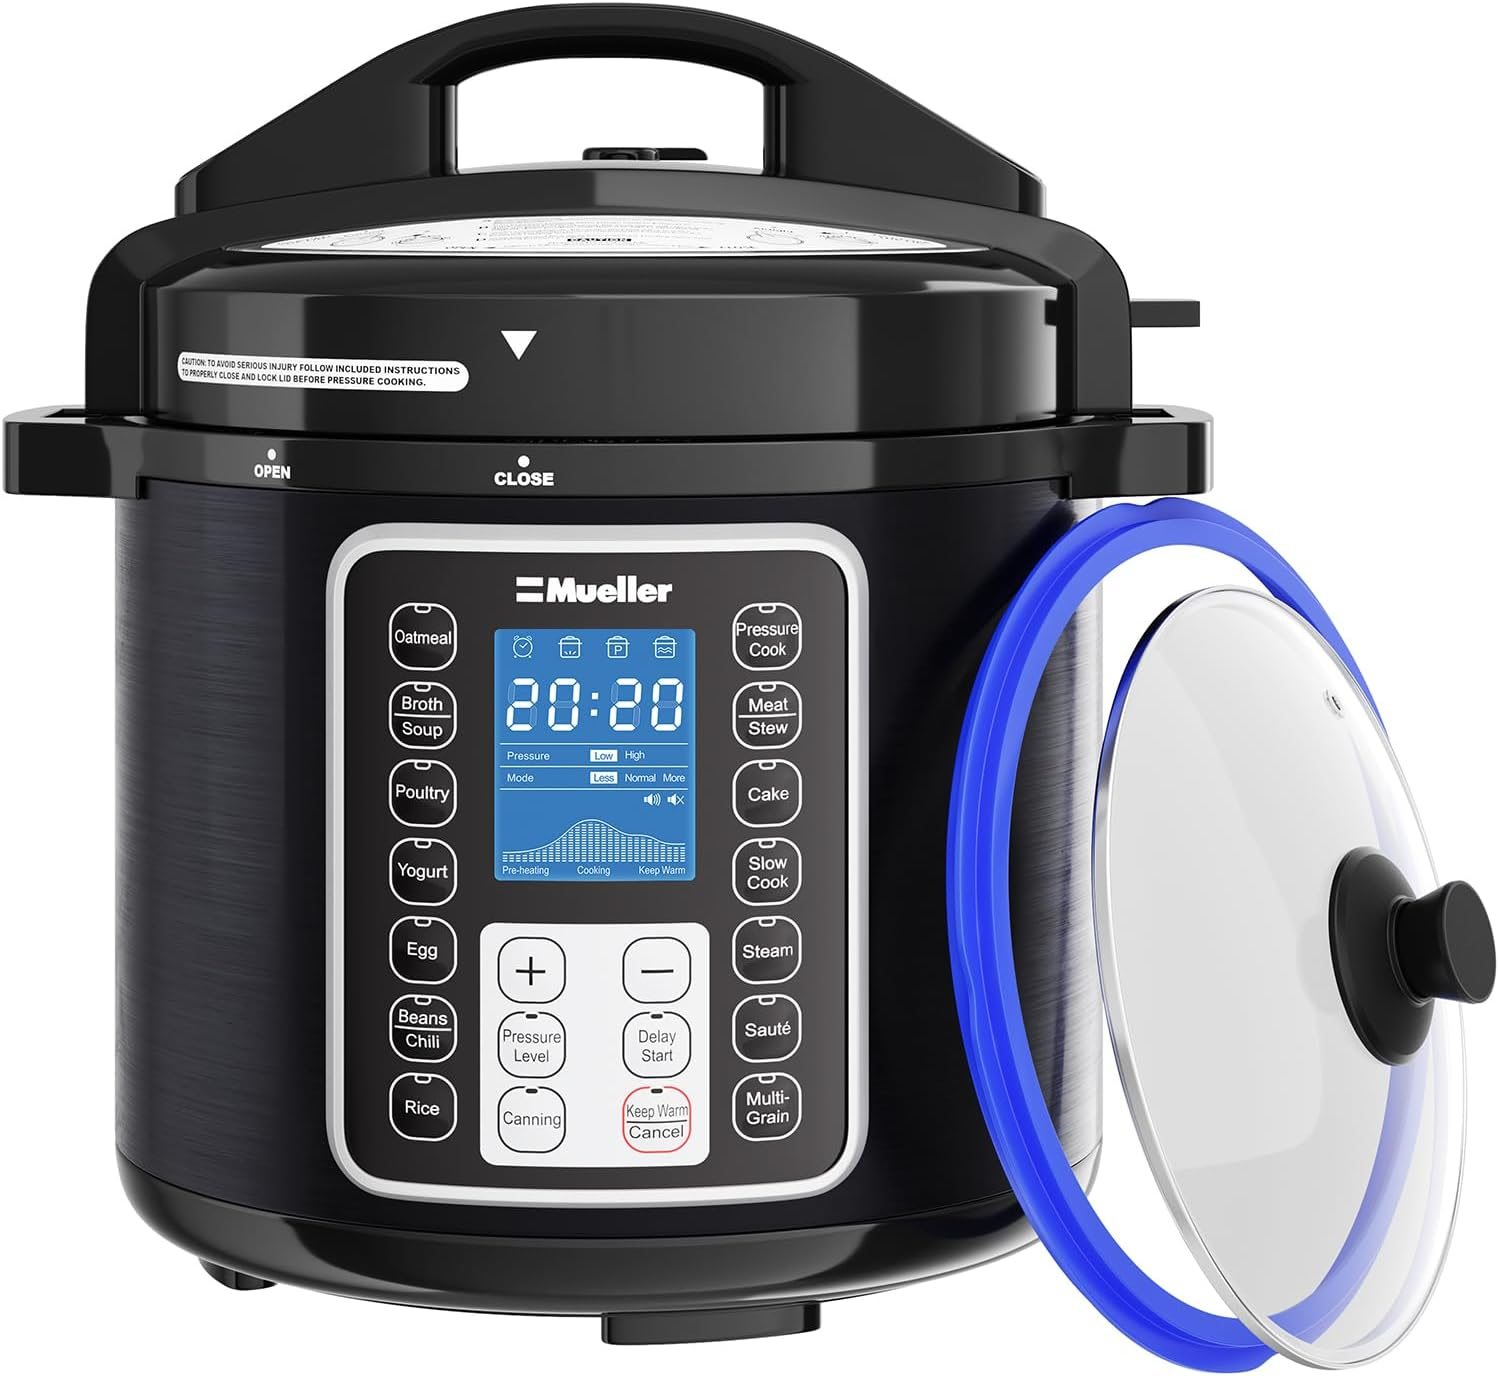 TRU 3 -2.5 quart slow cooker - appliances - by owner - sale - craigslist